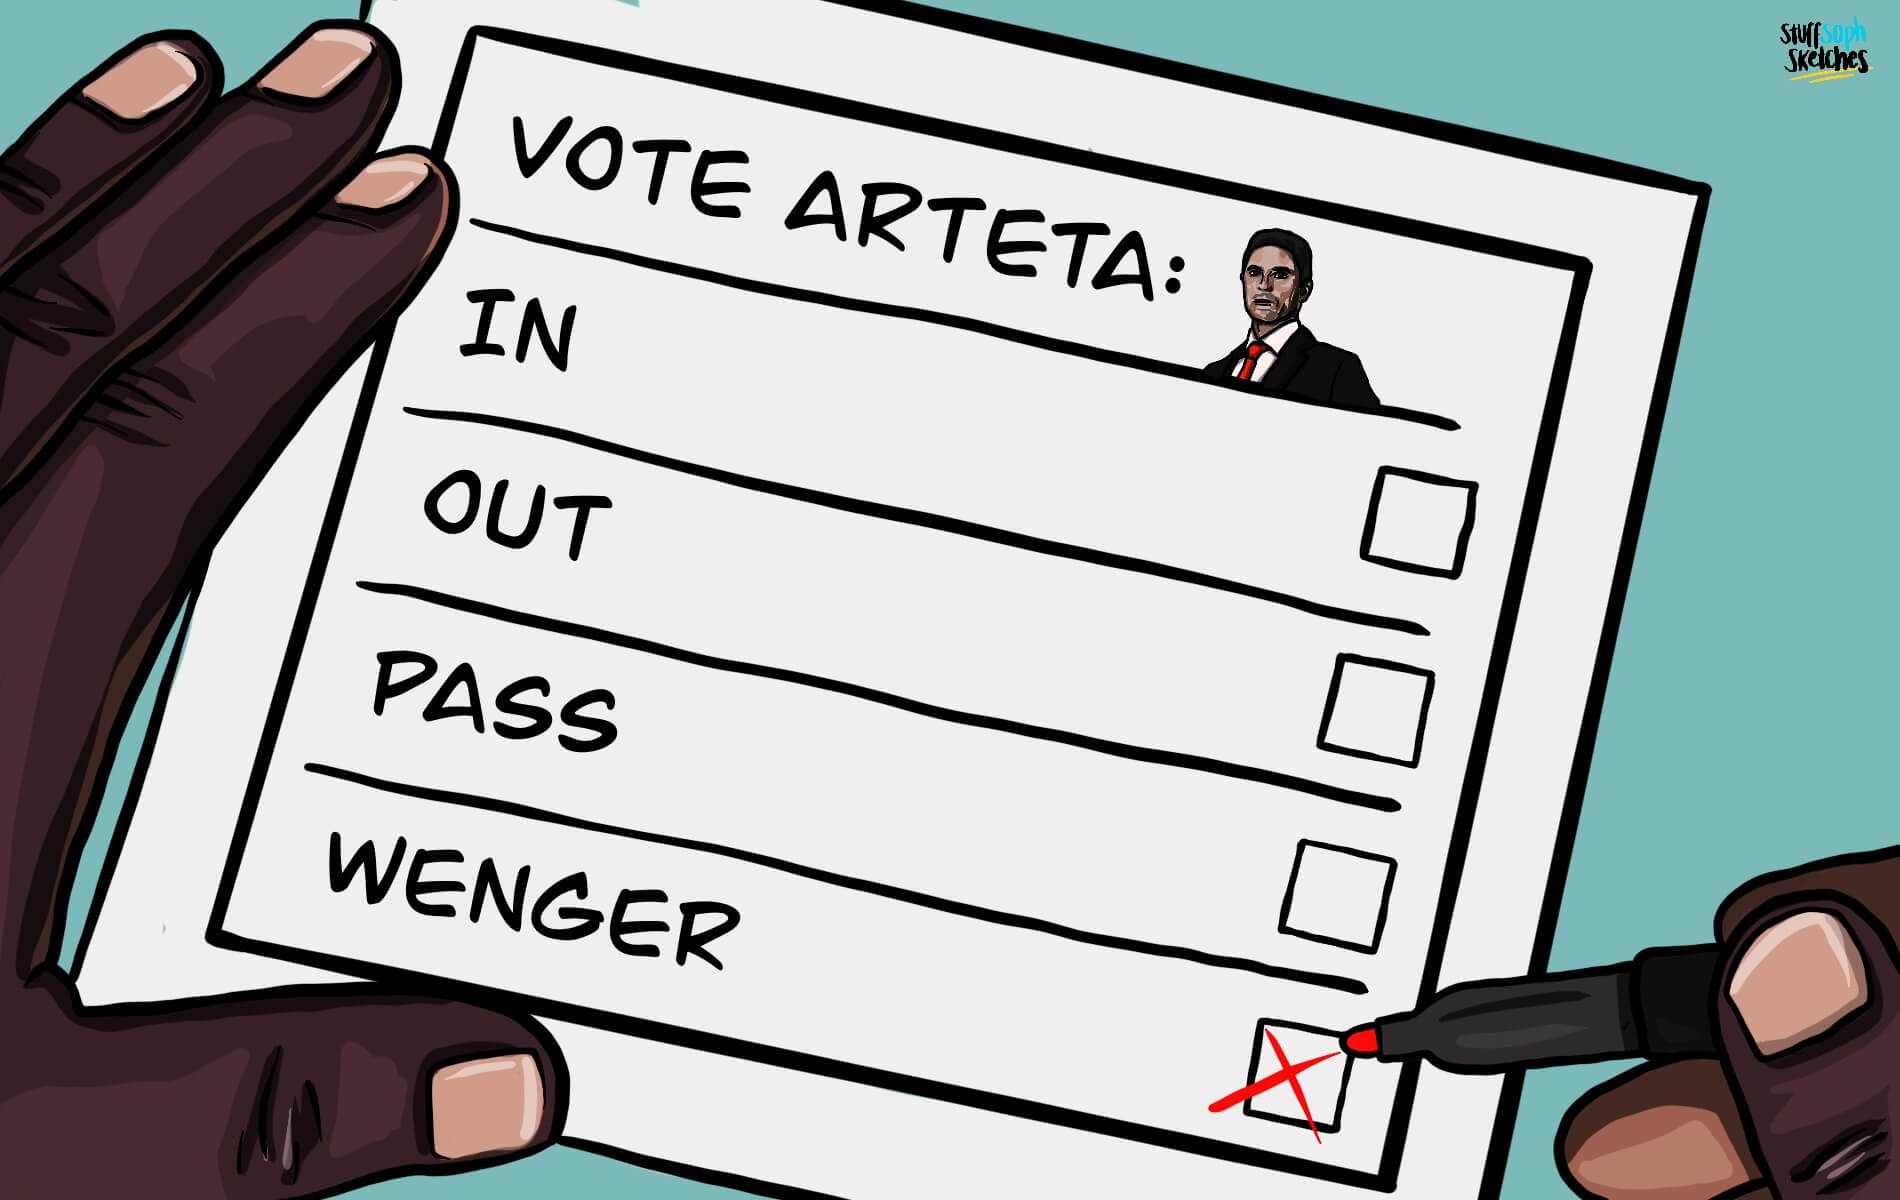 A ballot for Arsenal Manger - Arteta in, Arteta Out, Pass, Wenger